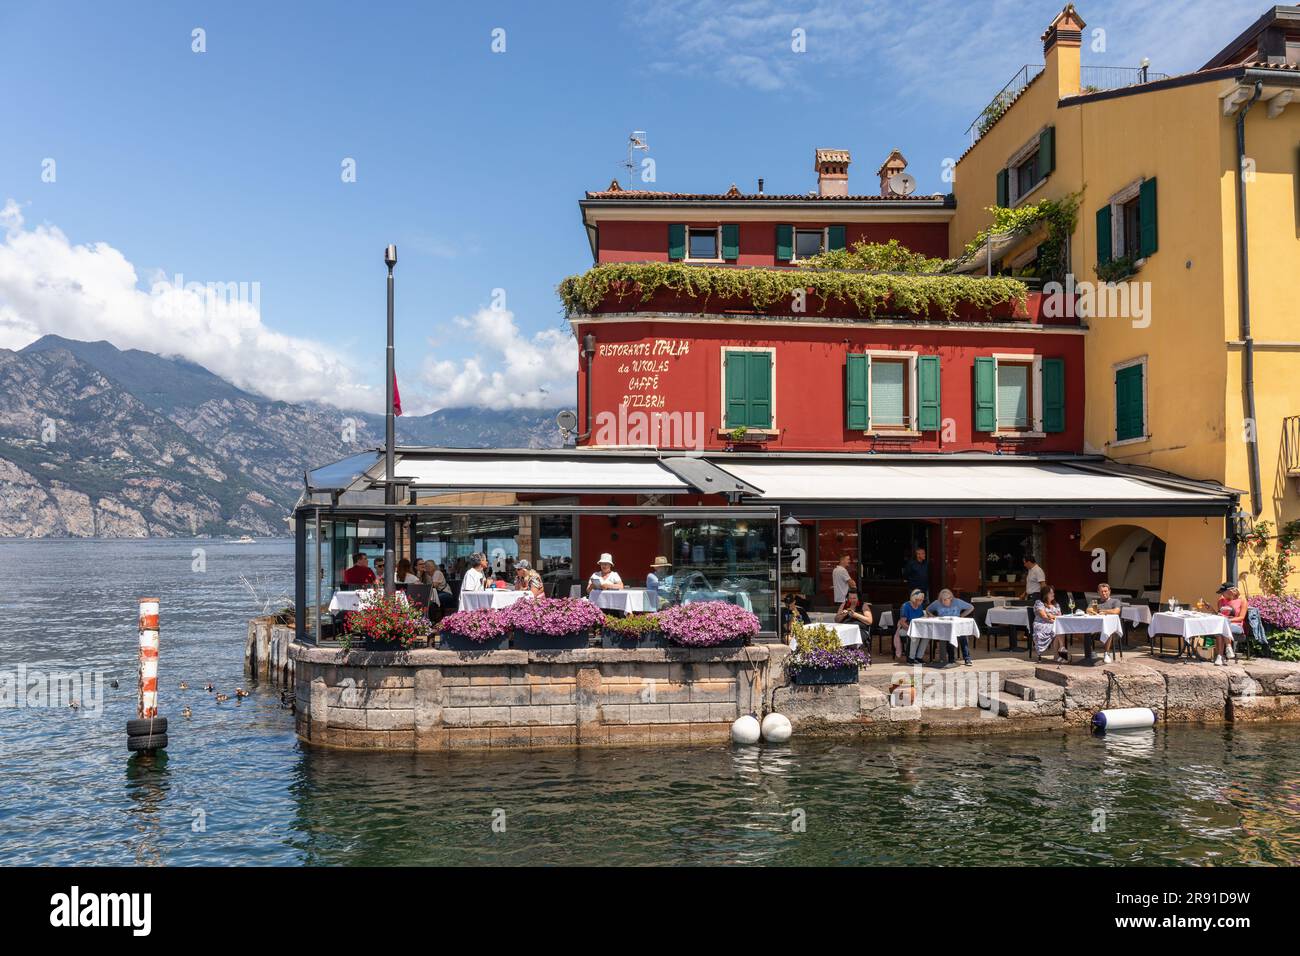 Le pittoresque port de Malcesine sur la Piazza Guglielmo Marconi qui est entouré de nombreux restaurants et cafés, Malcesine, Lac de Garde, Italie, Europe Banque D'Images